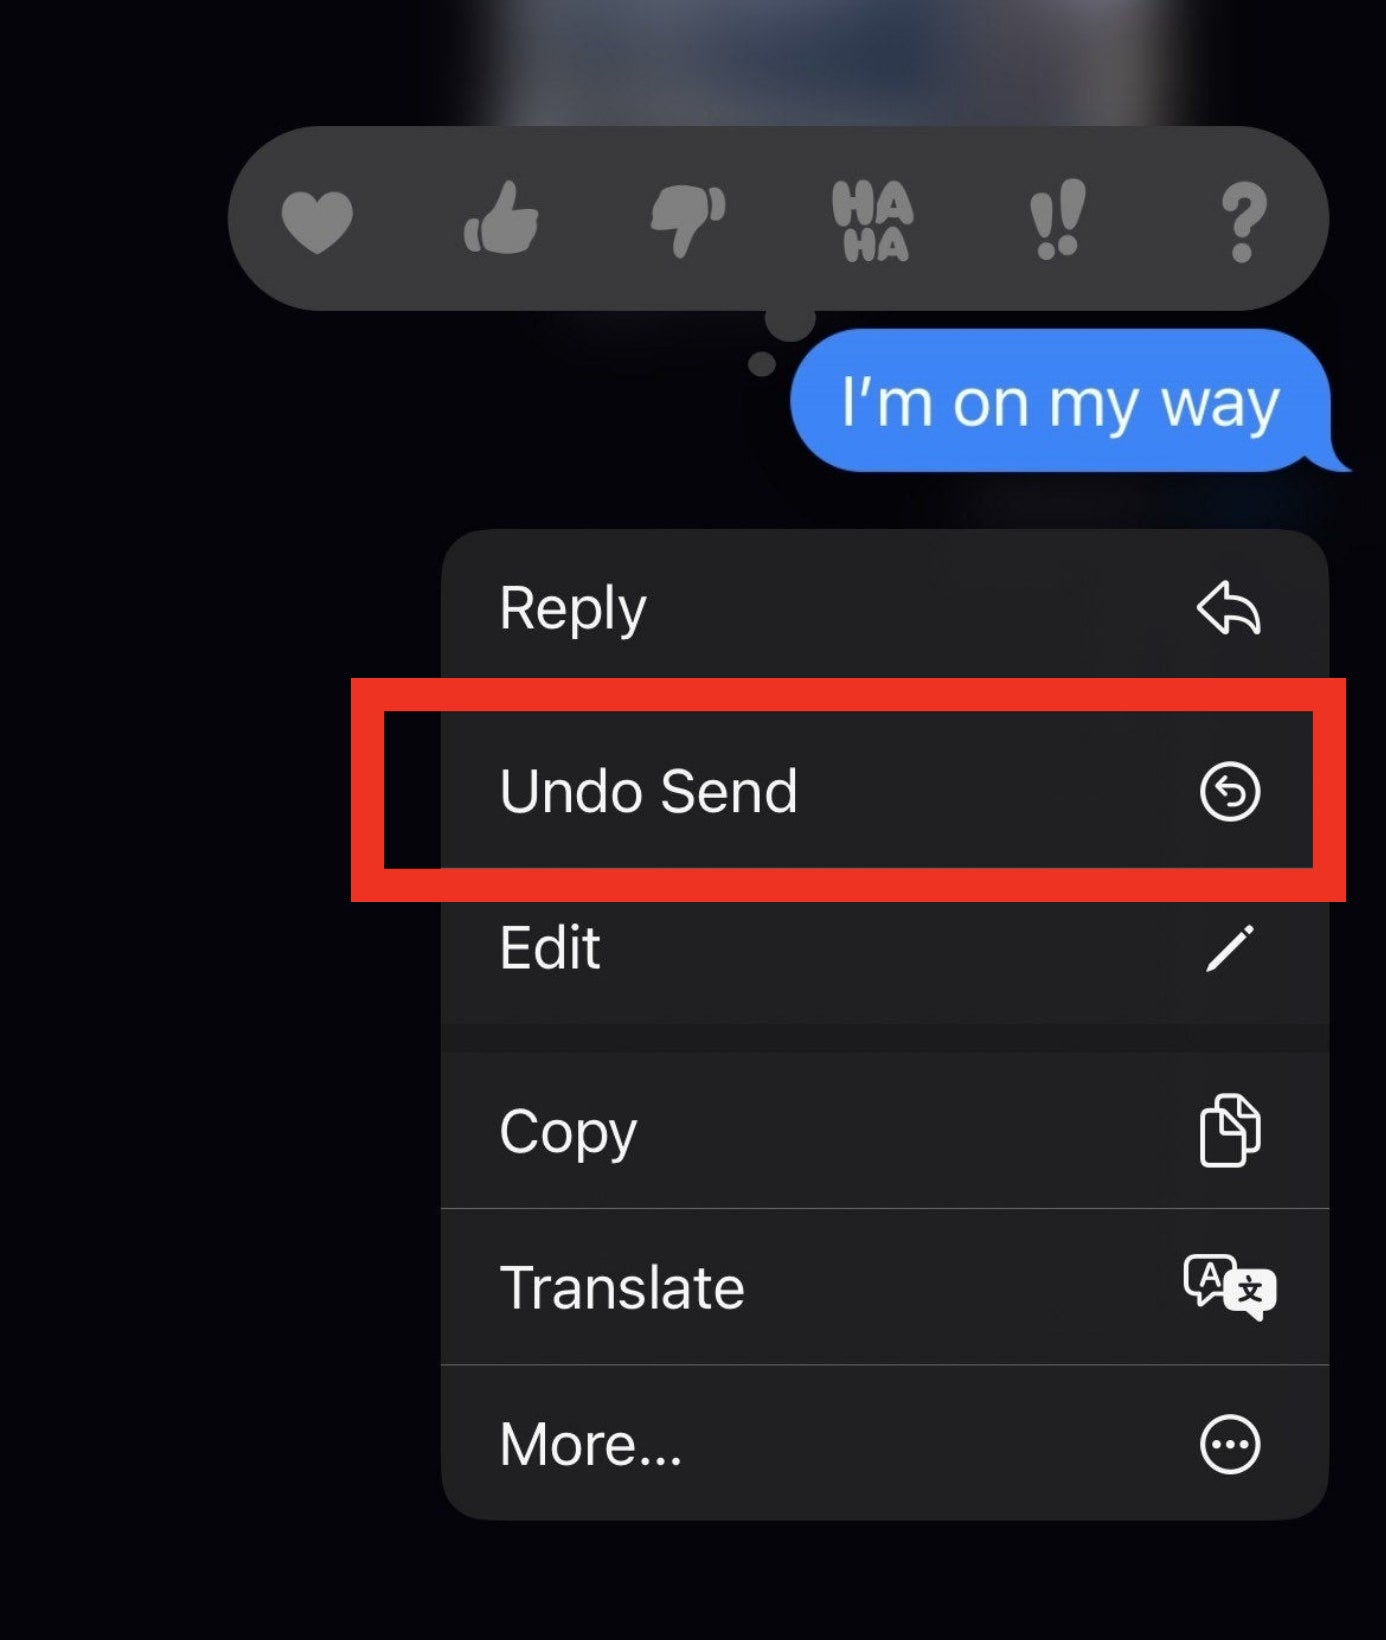 undo send option